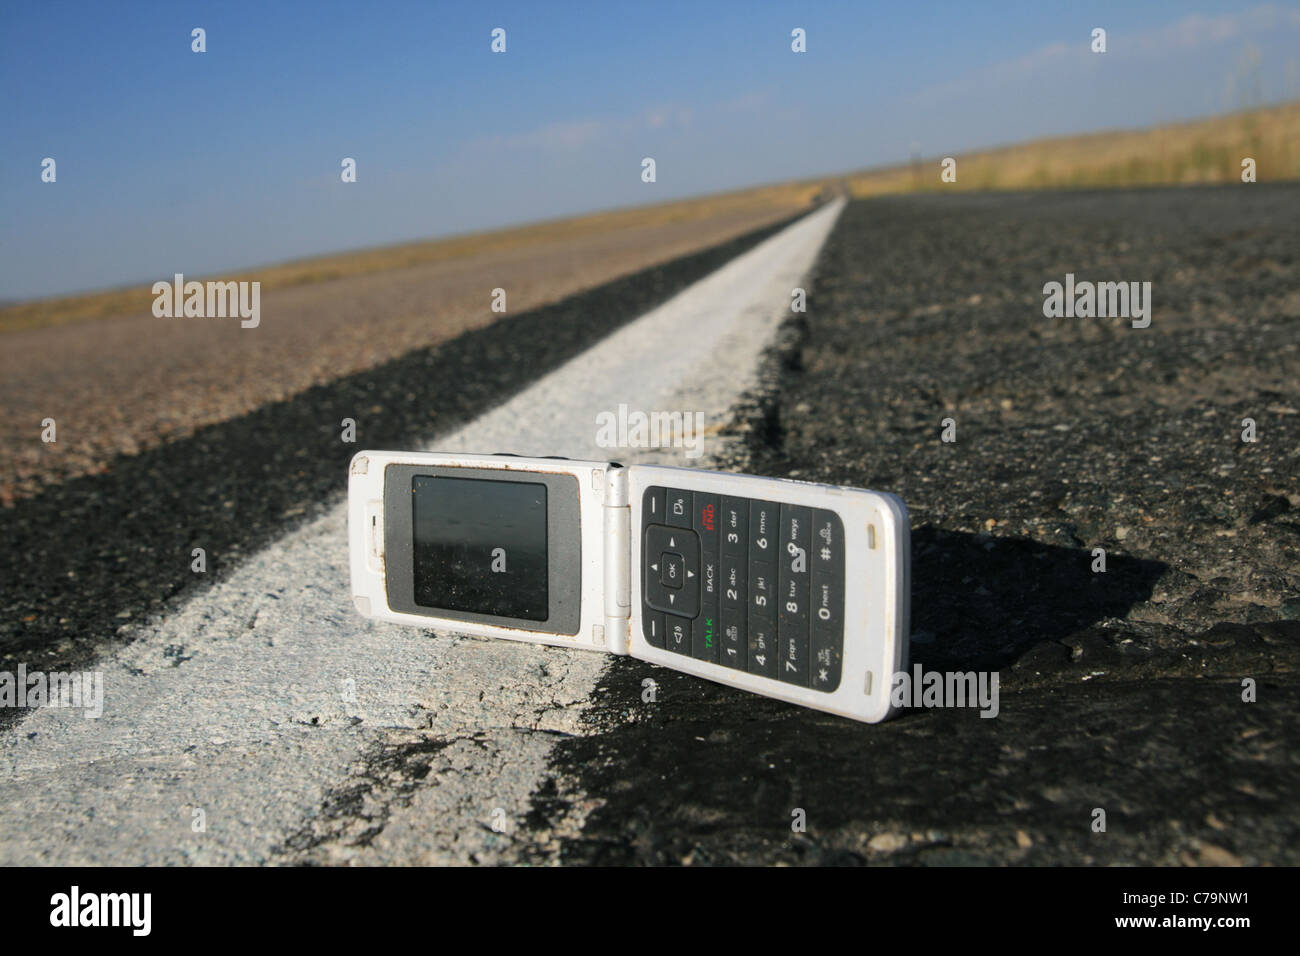 Replier blanc téléphone portable abandonné sur le bord de la route Banque D'Images